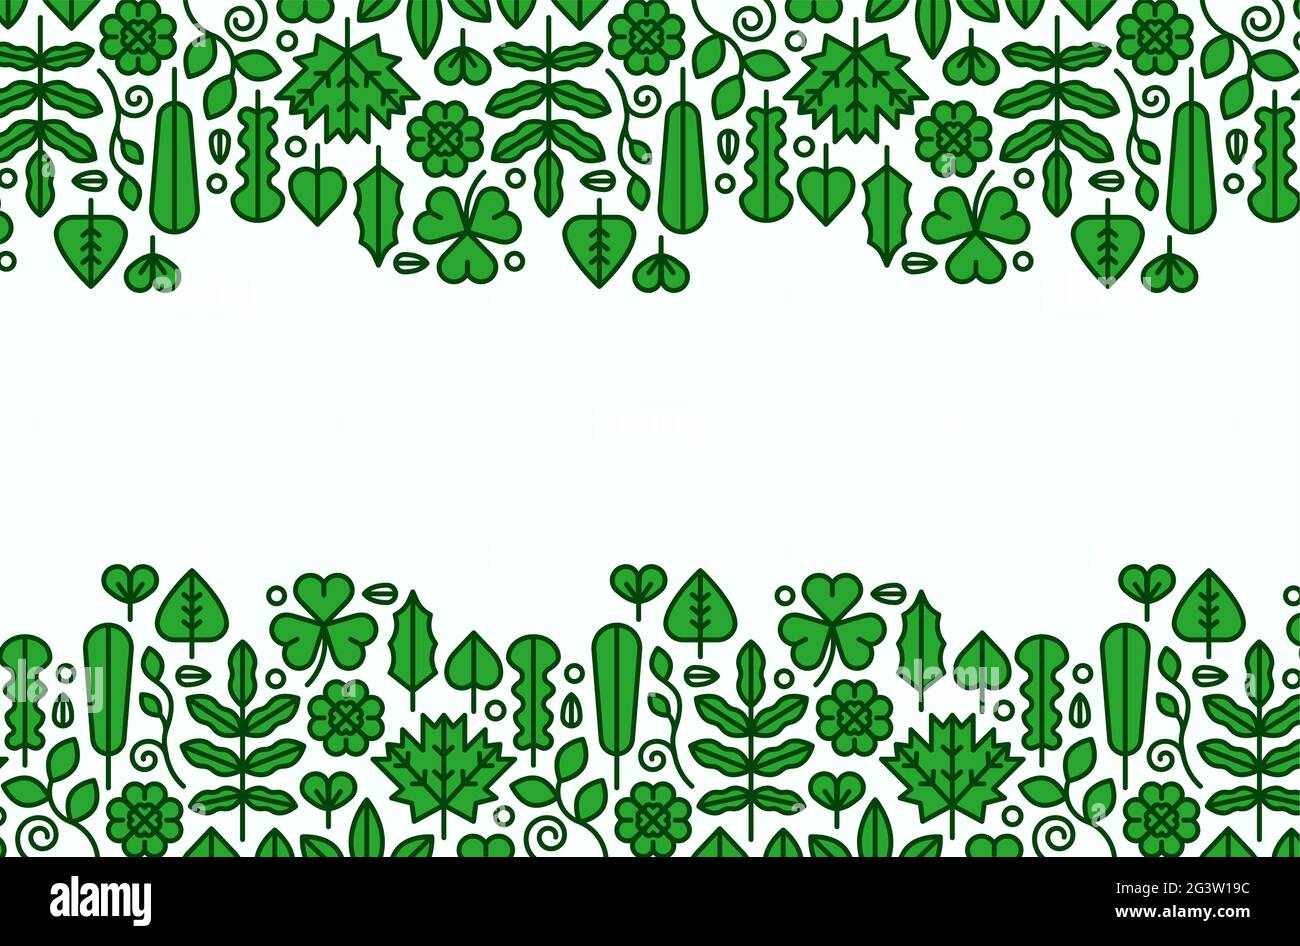 Leerer weißer Hintergrund-Rahmen mit modernen grünen Pflanzenblatt-Ikonen im trendigen Flachlinien-Stil. Natürliches Konzept, umweltfreundliche Rahmenvorlage. Stock Vektor